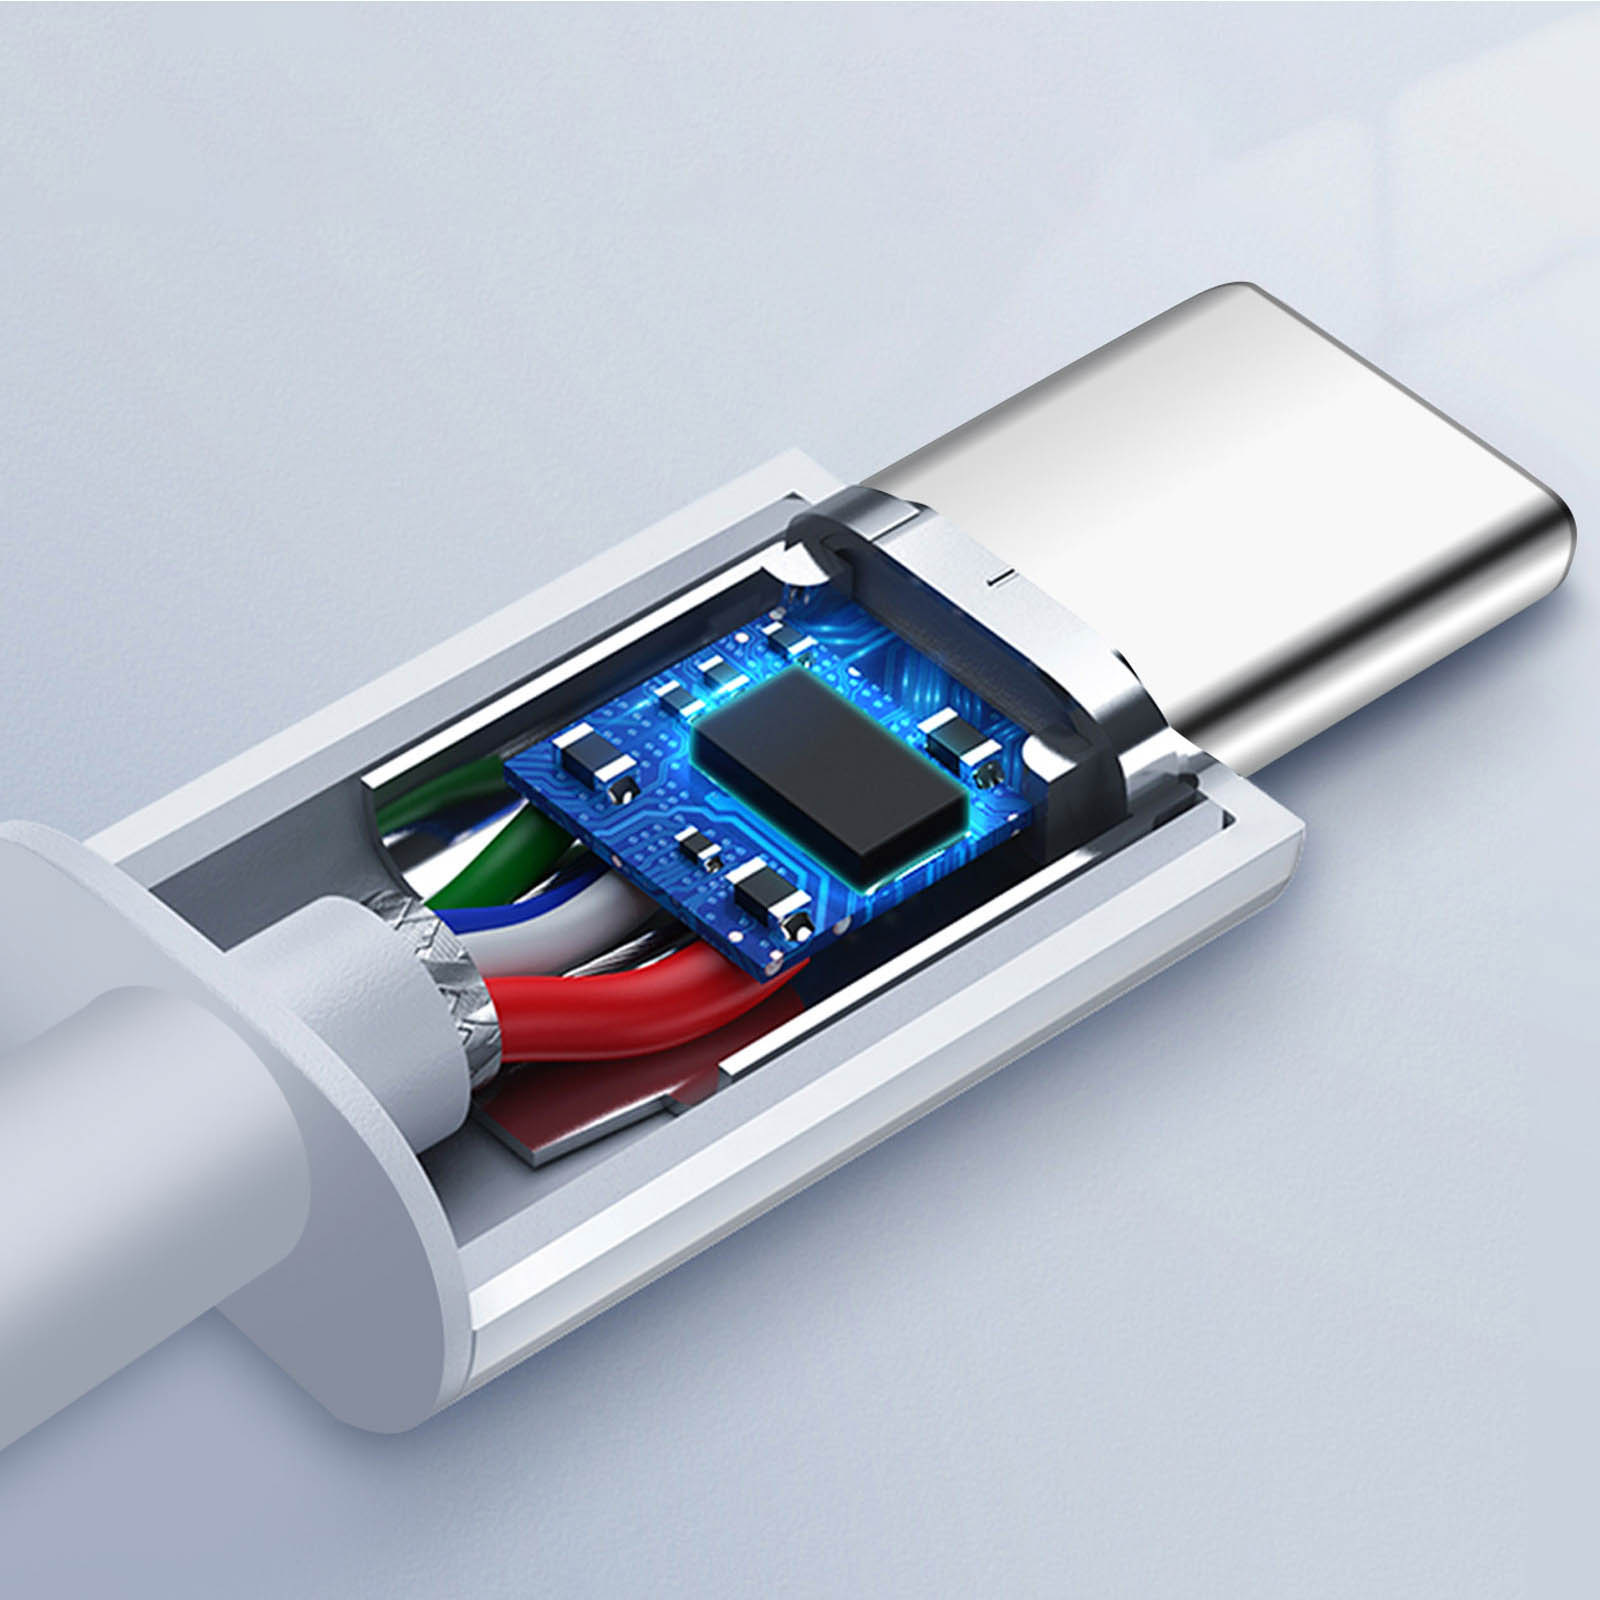 APPLE ADAPTATEUR USB-C VERS JACK 3.5 MM